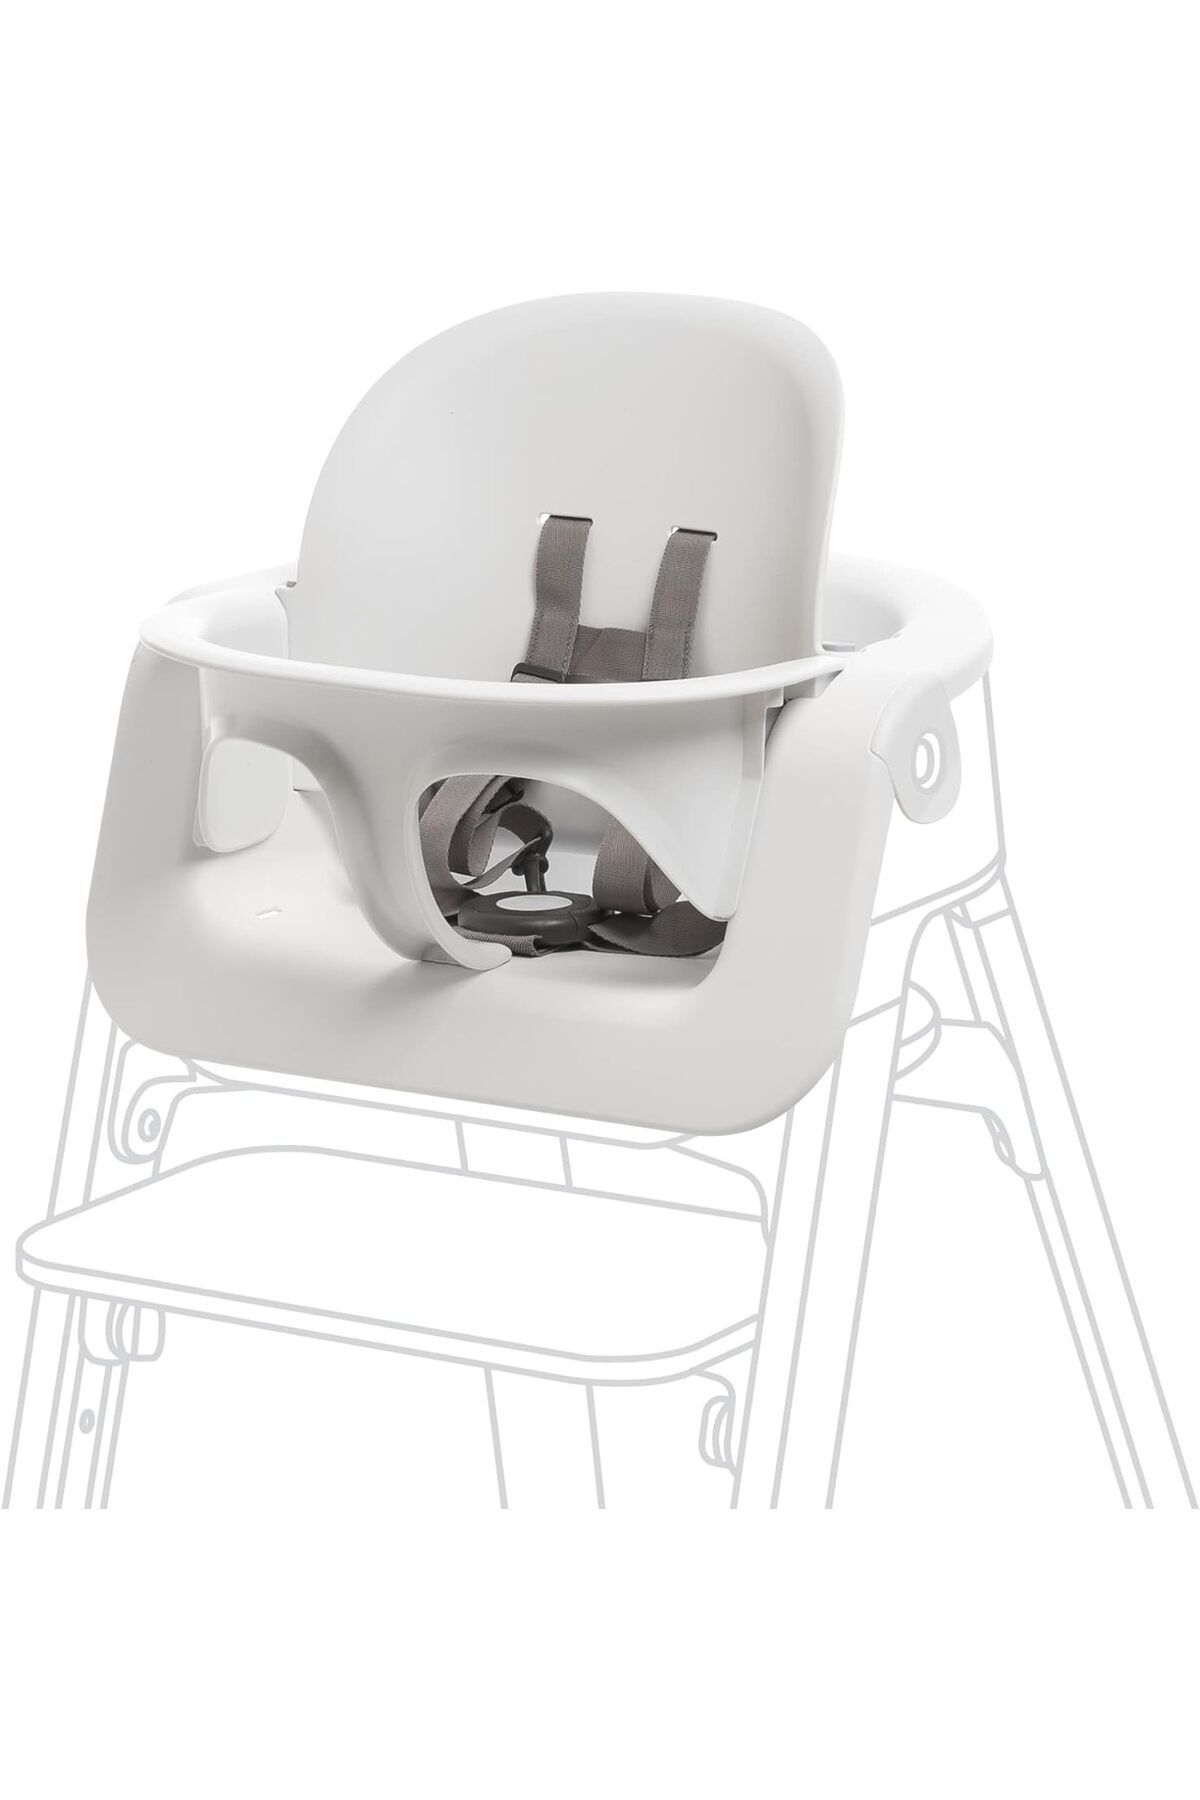 Stokke Sandalyeyi konforlu bir mama sandalyesine dönüştürür